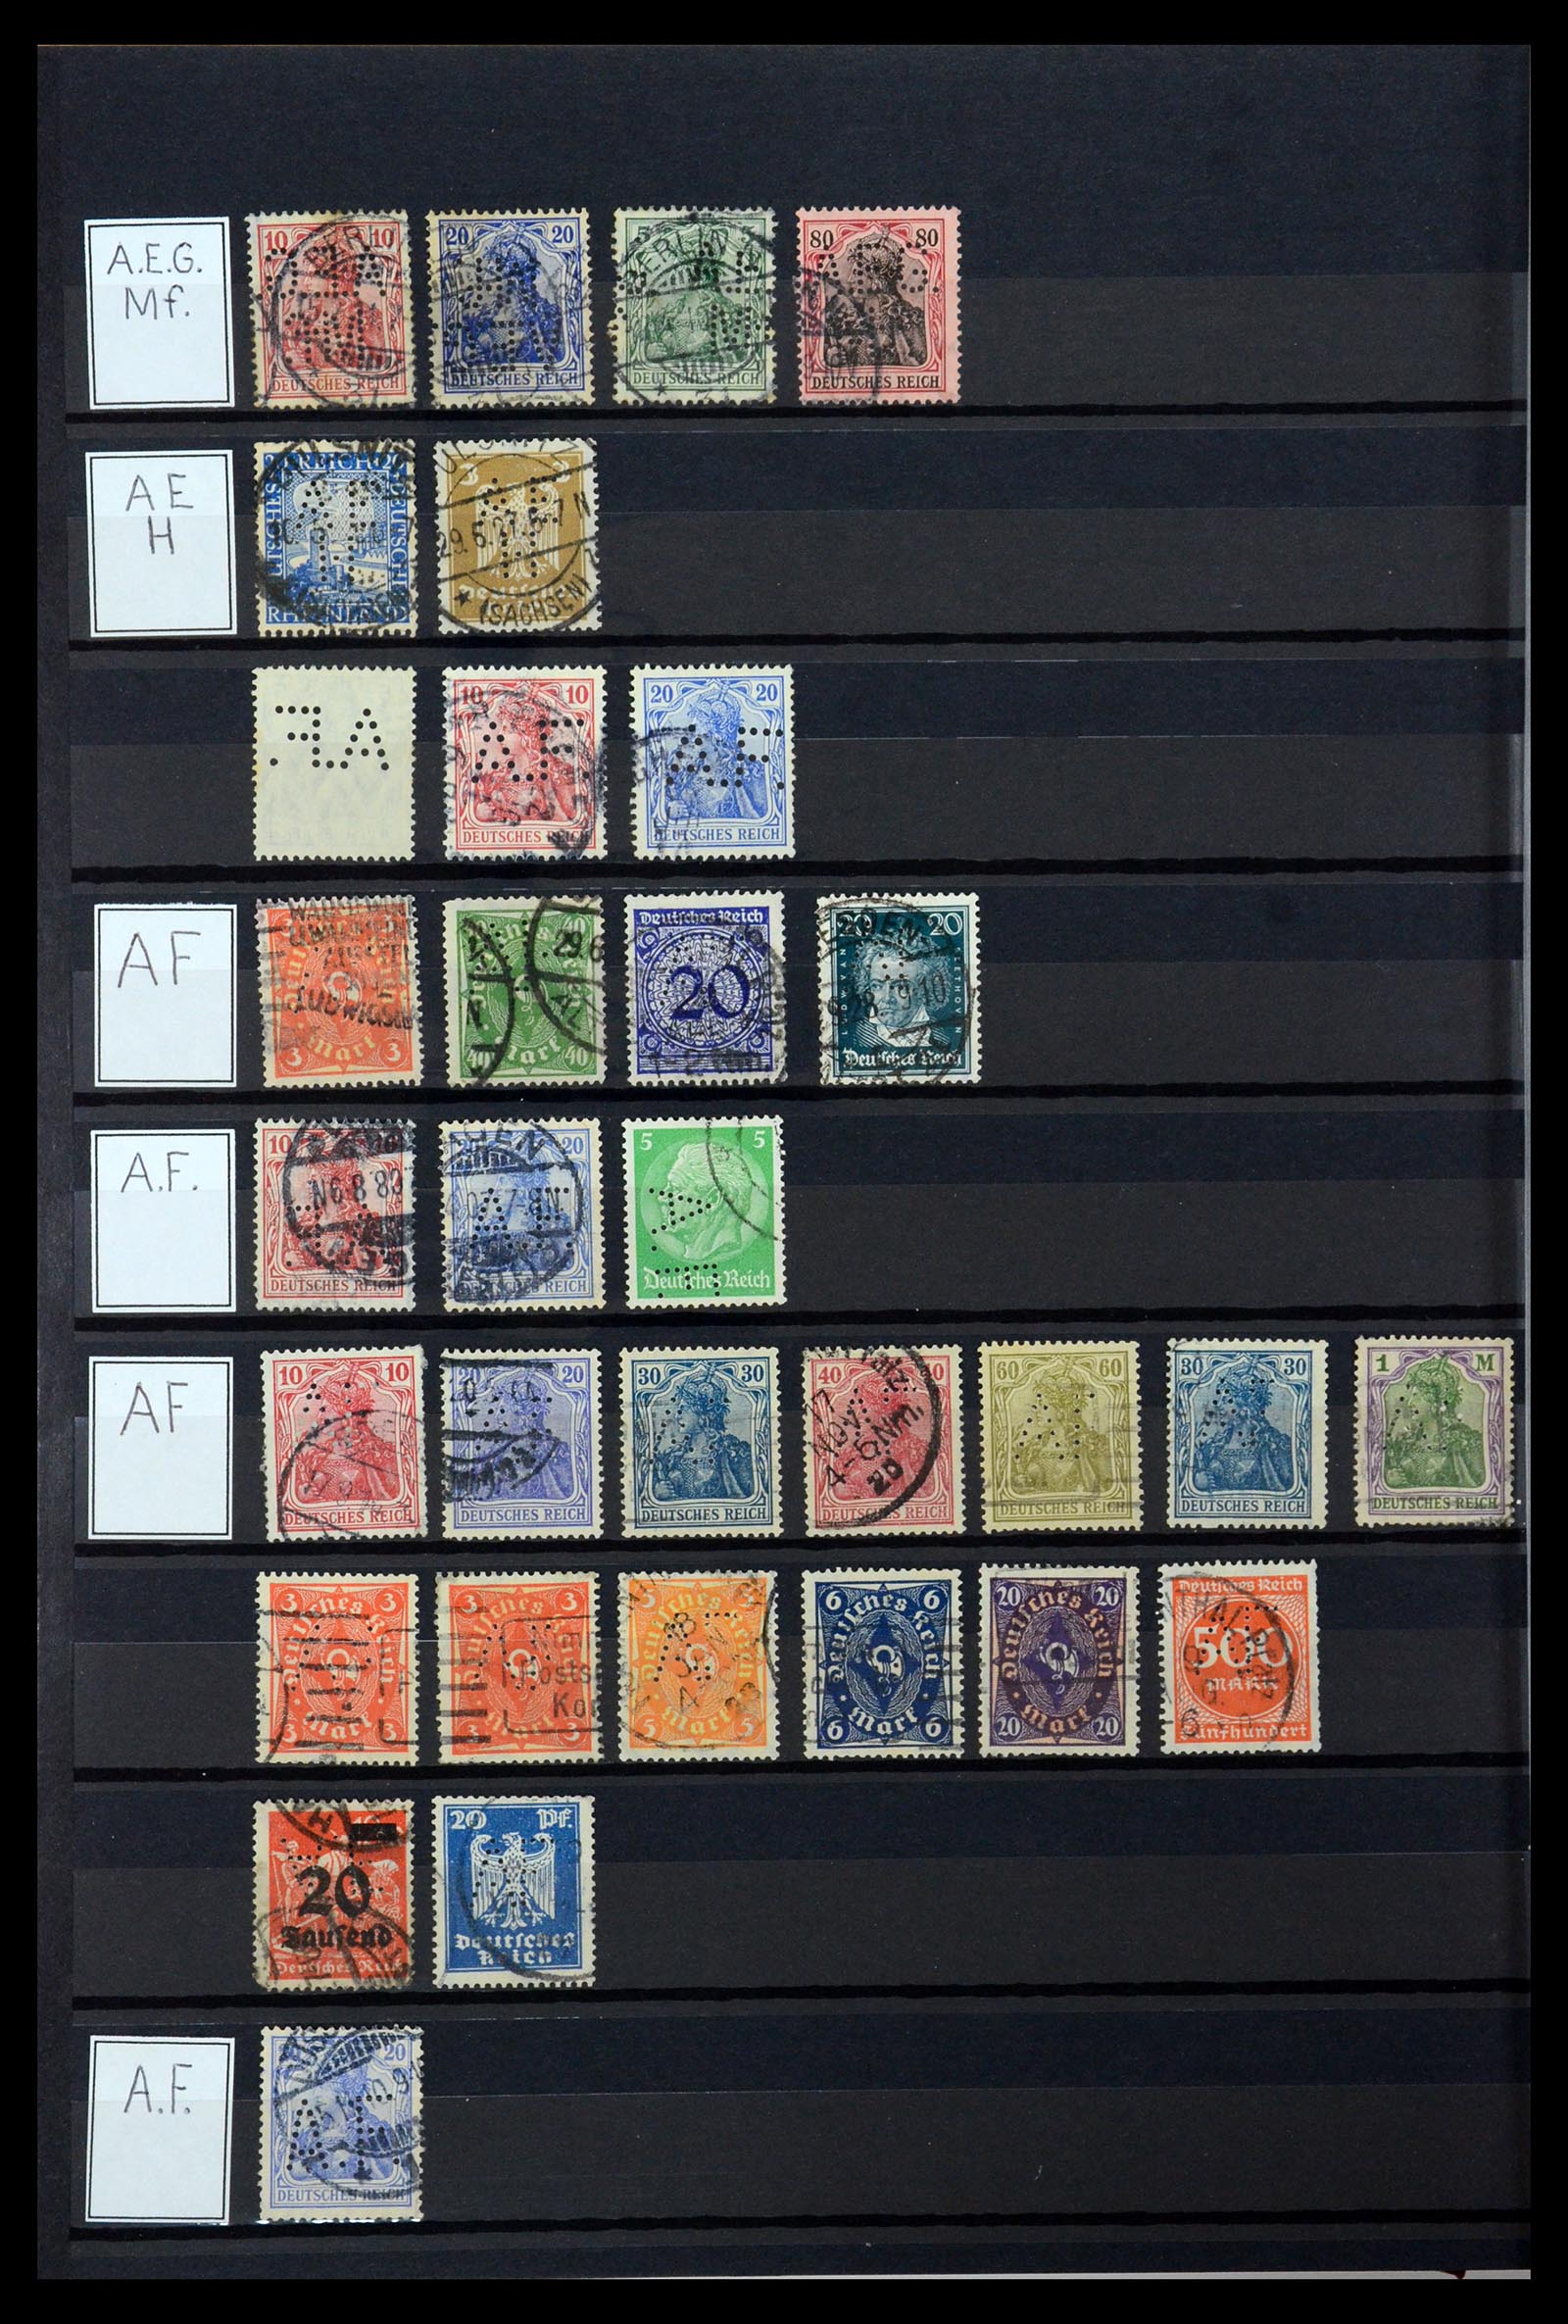 36405 012 - Stamp collection 36405 German Reich perfins 1880-1945.